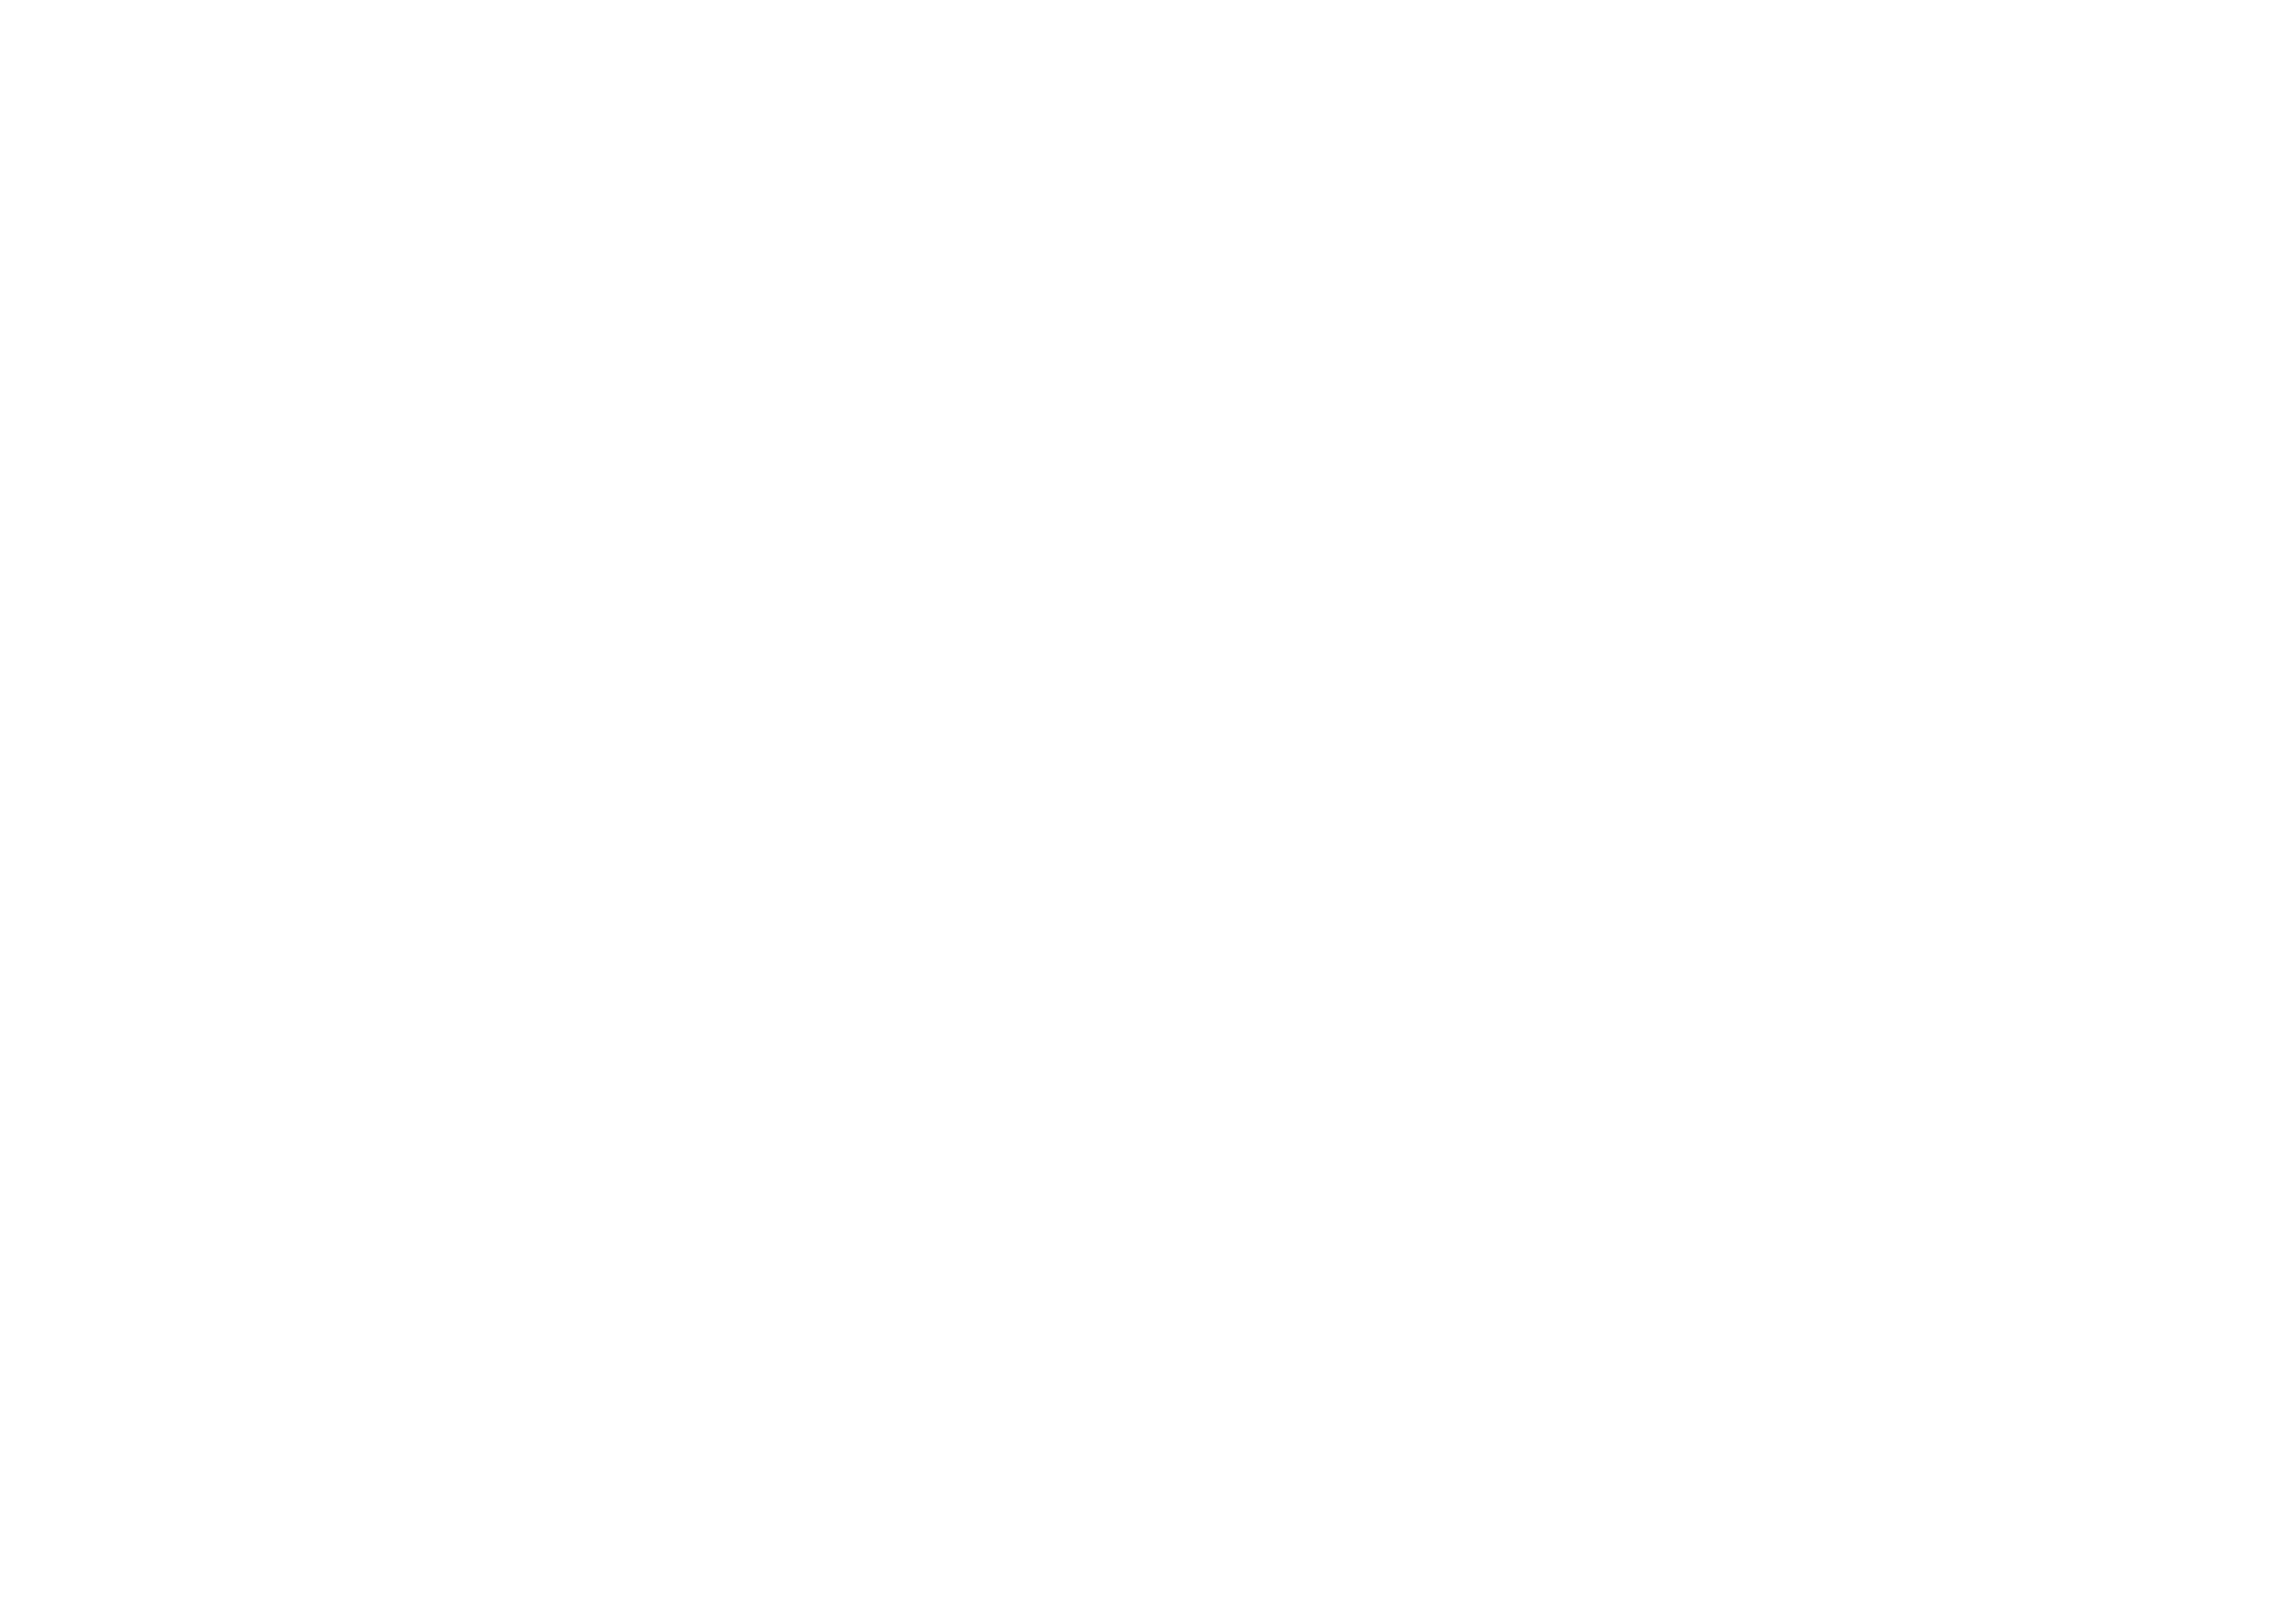 Watch Idea Movement And Mechanical Watch Manufacturer